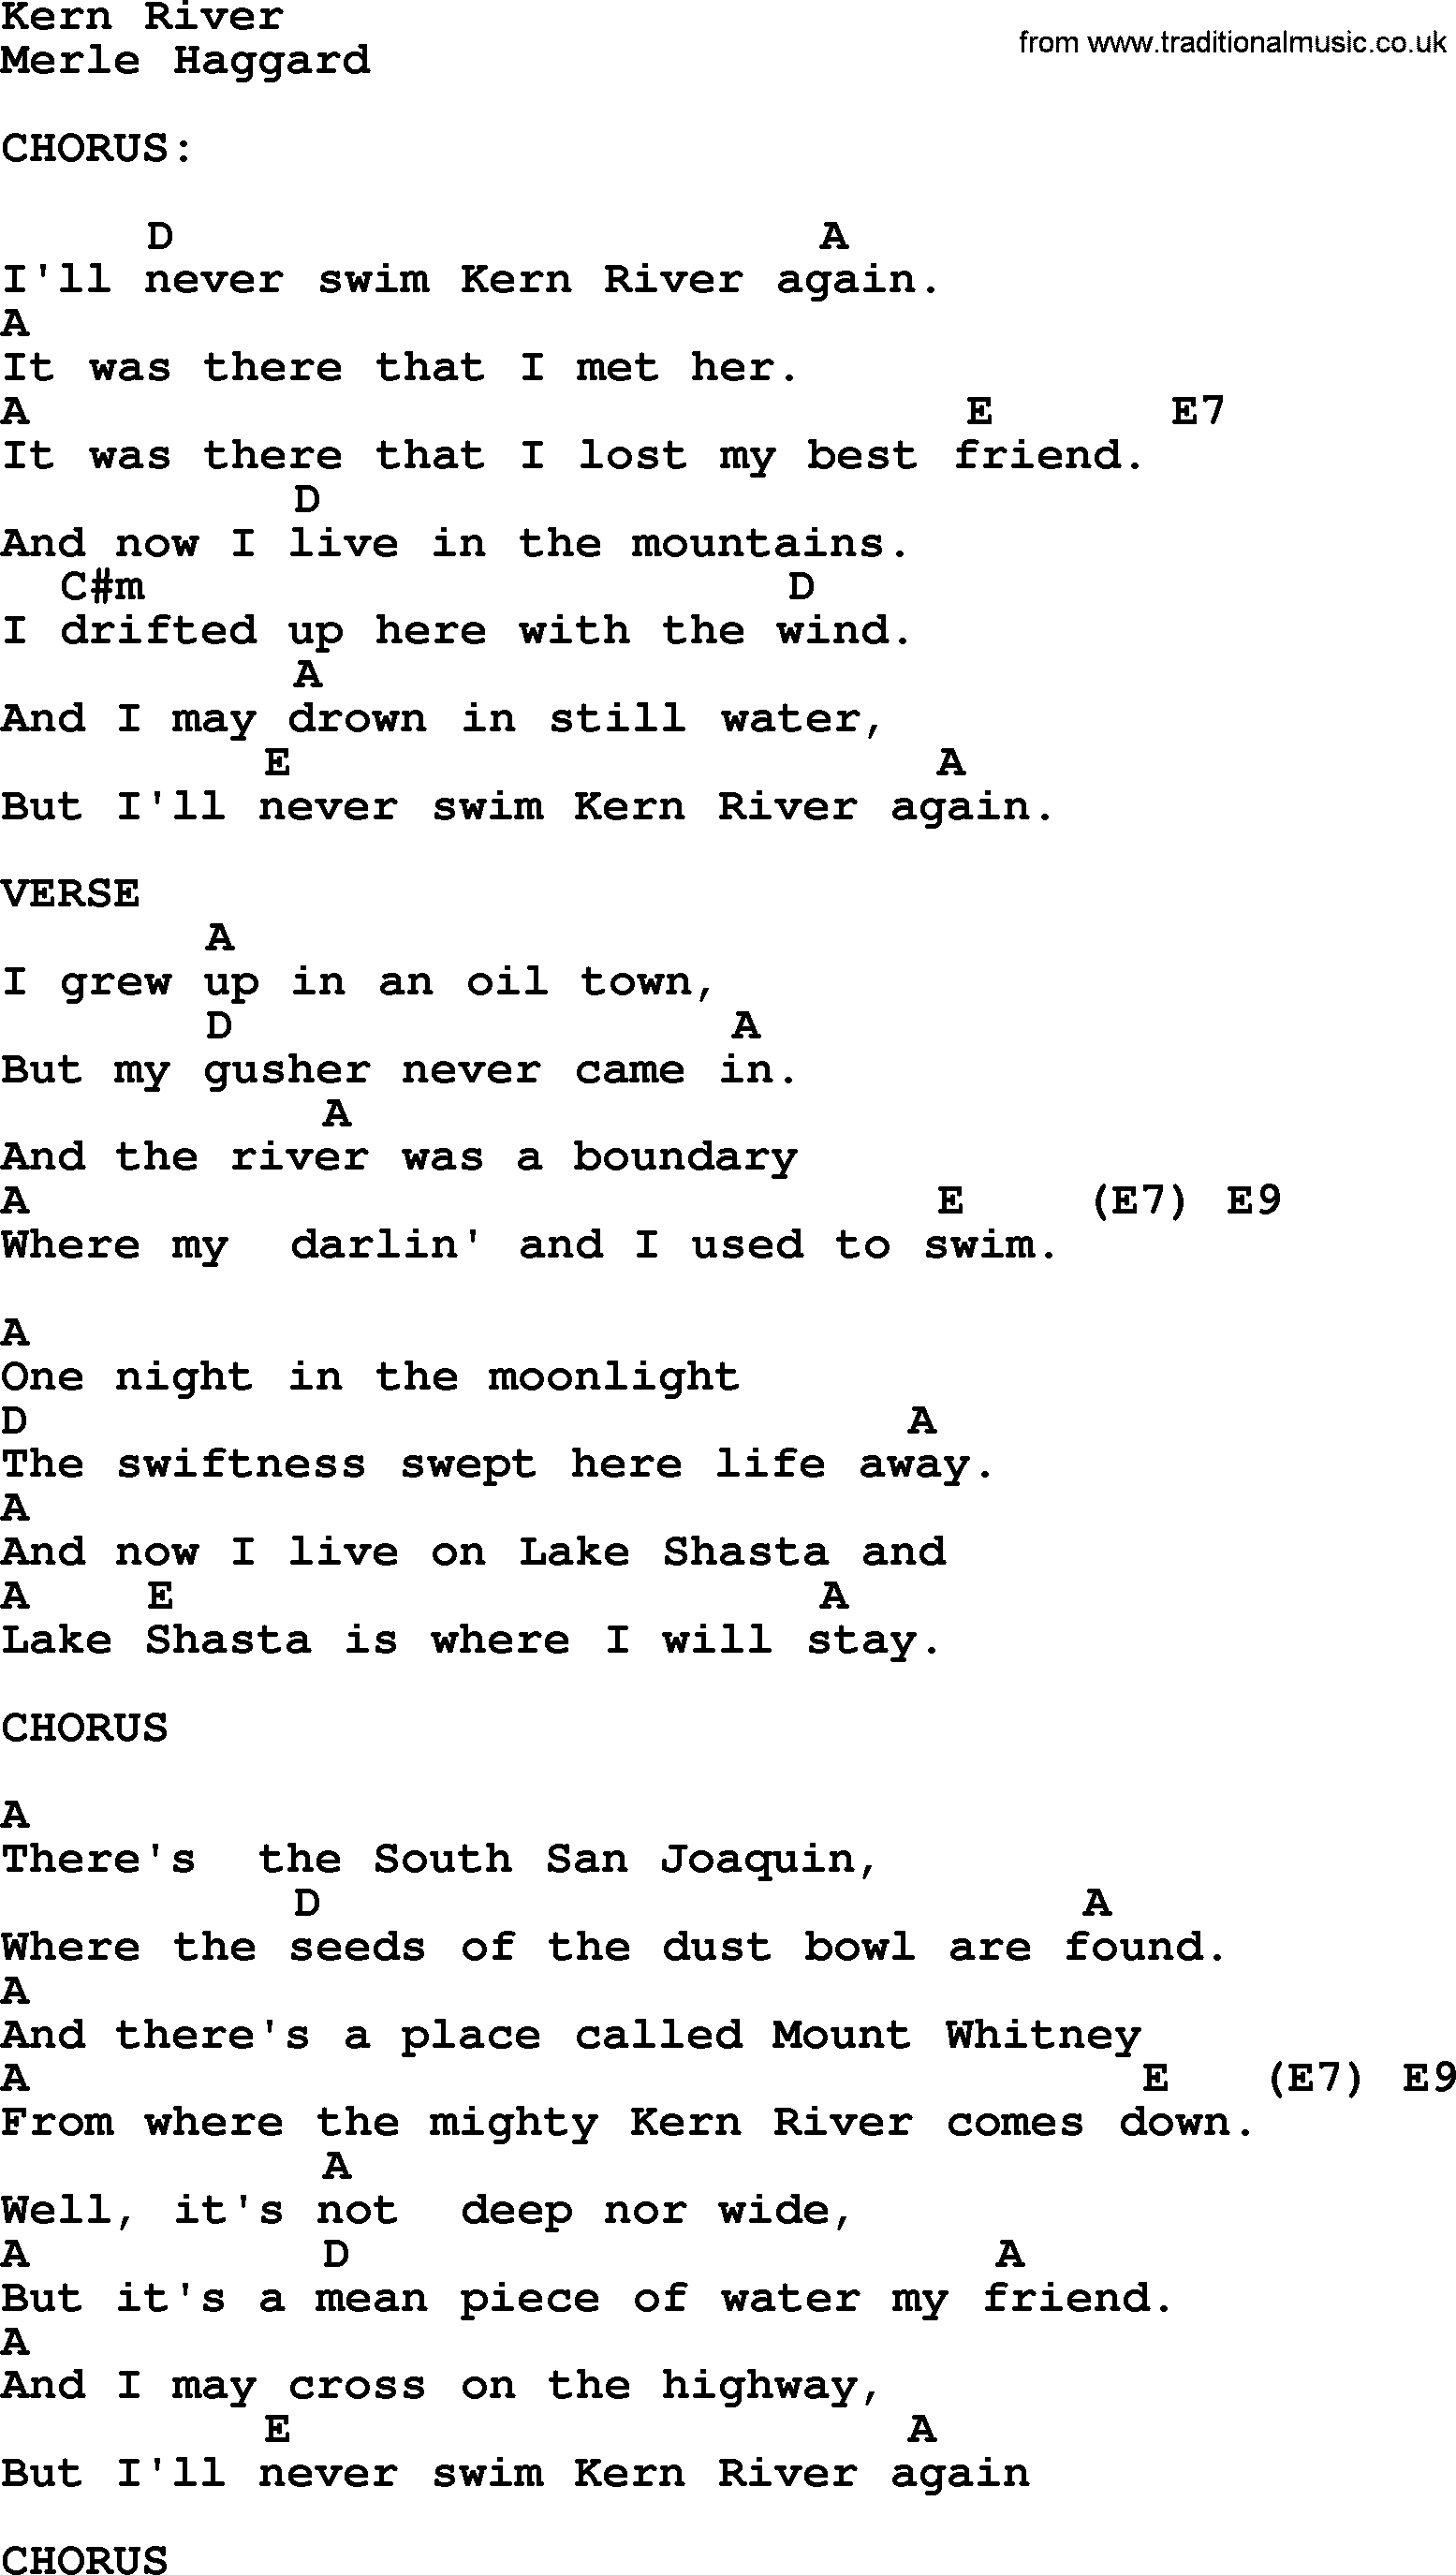 Merle Haggard song: Kern River, lyrics and chords